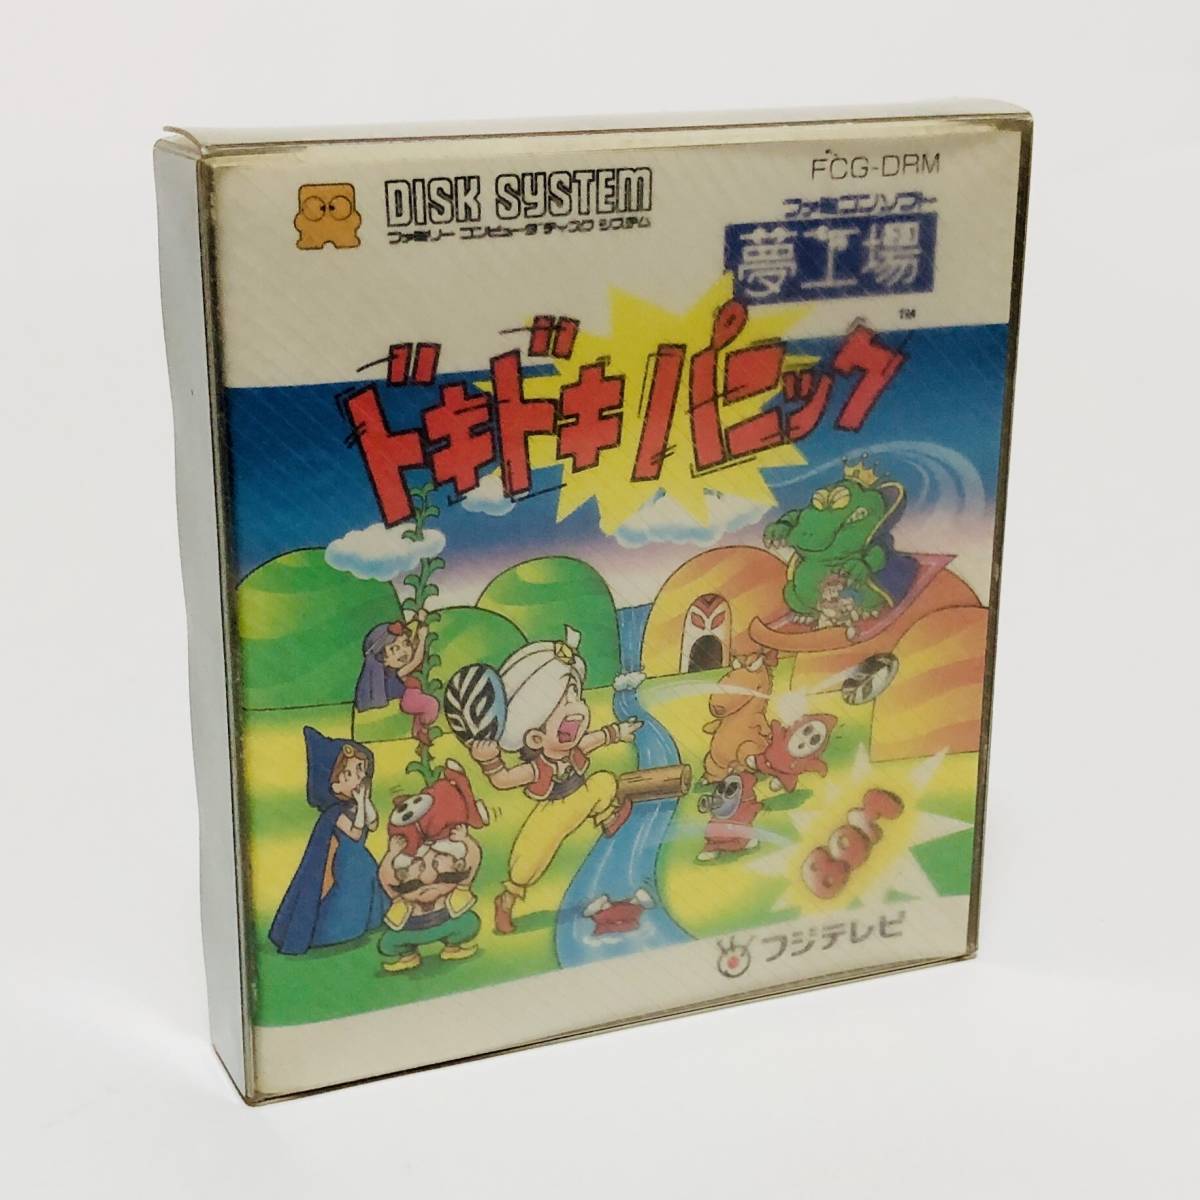 激安/新作 ディスクシステム ファミコン 【送料無料】 夢工場 CIB Panic Doki Doki System Disk Famicom Nintendo 任天堂 箱説付き ドキドキパニック ディスクシステム